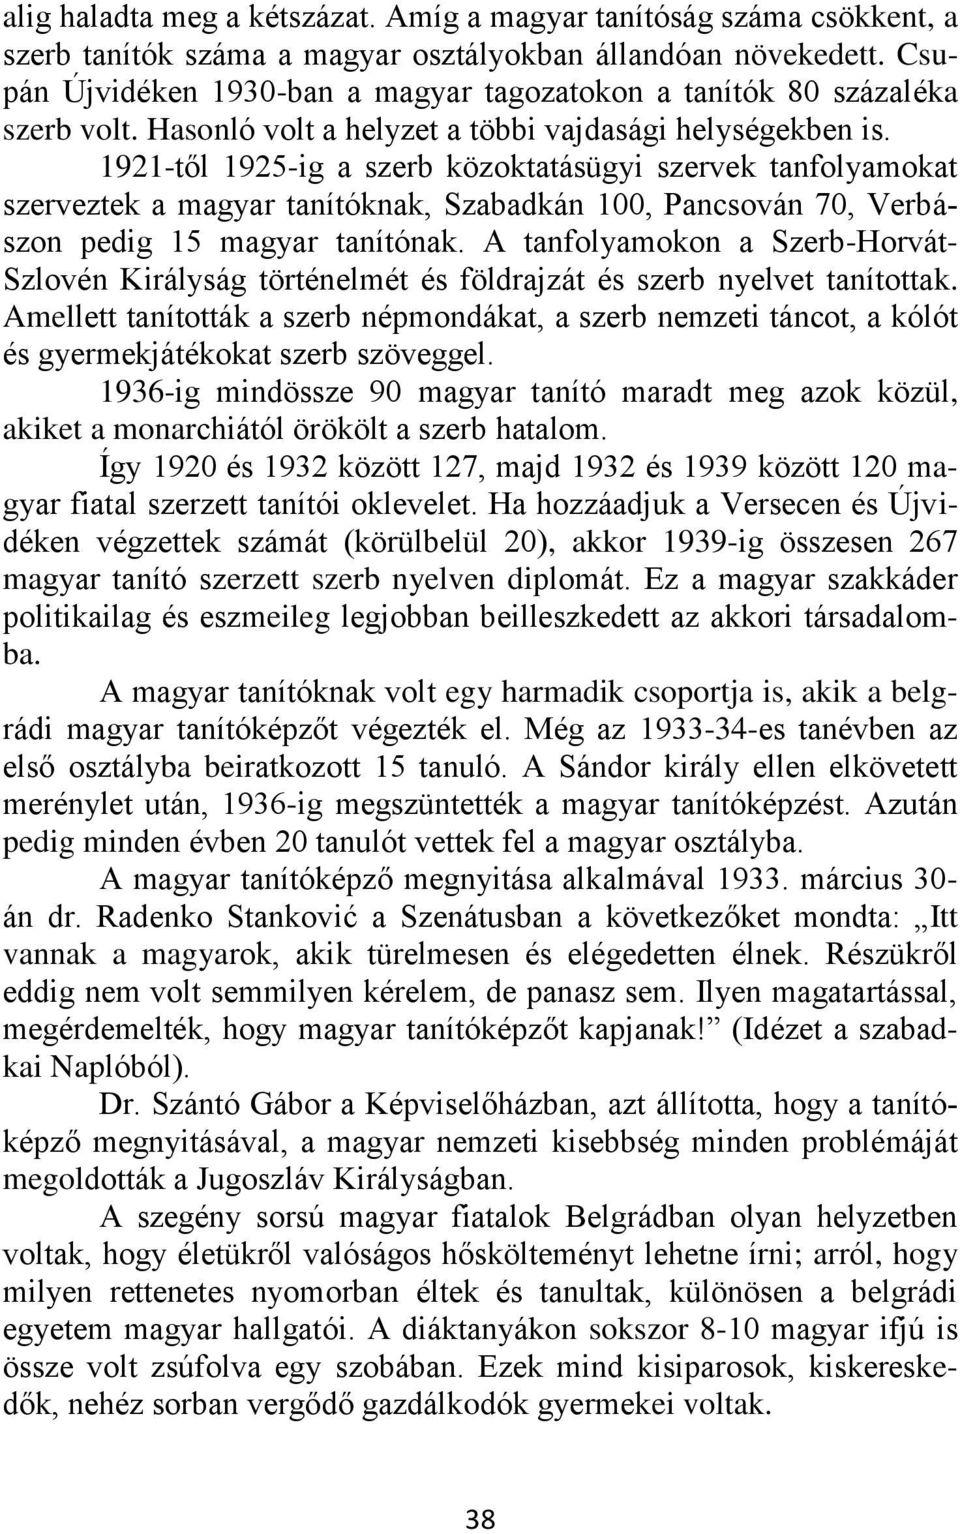 1921-től 1925-ig a szerb közoktatásügyi szervek tanfolyamokat szerveztek a magyar tanítóknak, Szabadkán 100, Pancsován 70, Verbászon pedig 15 magyar tanítónak.